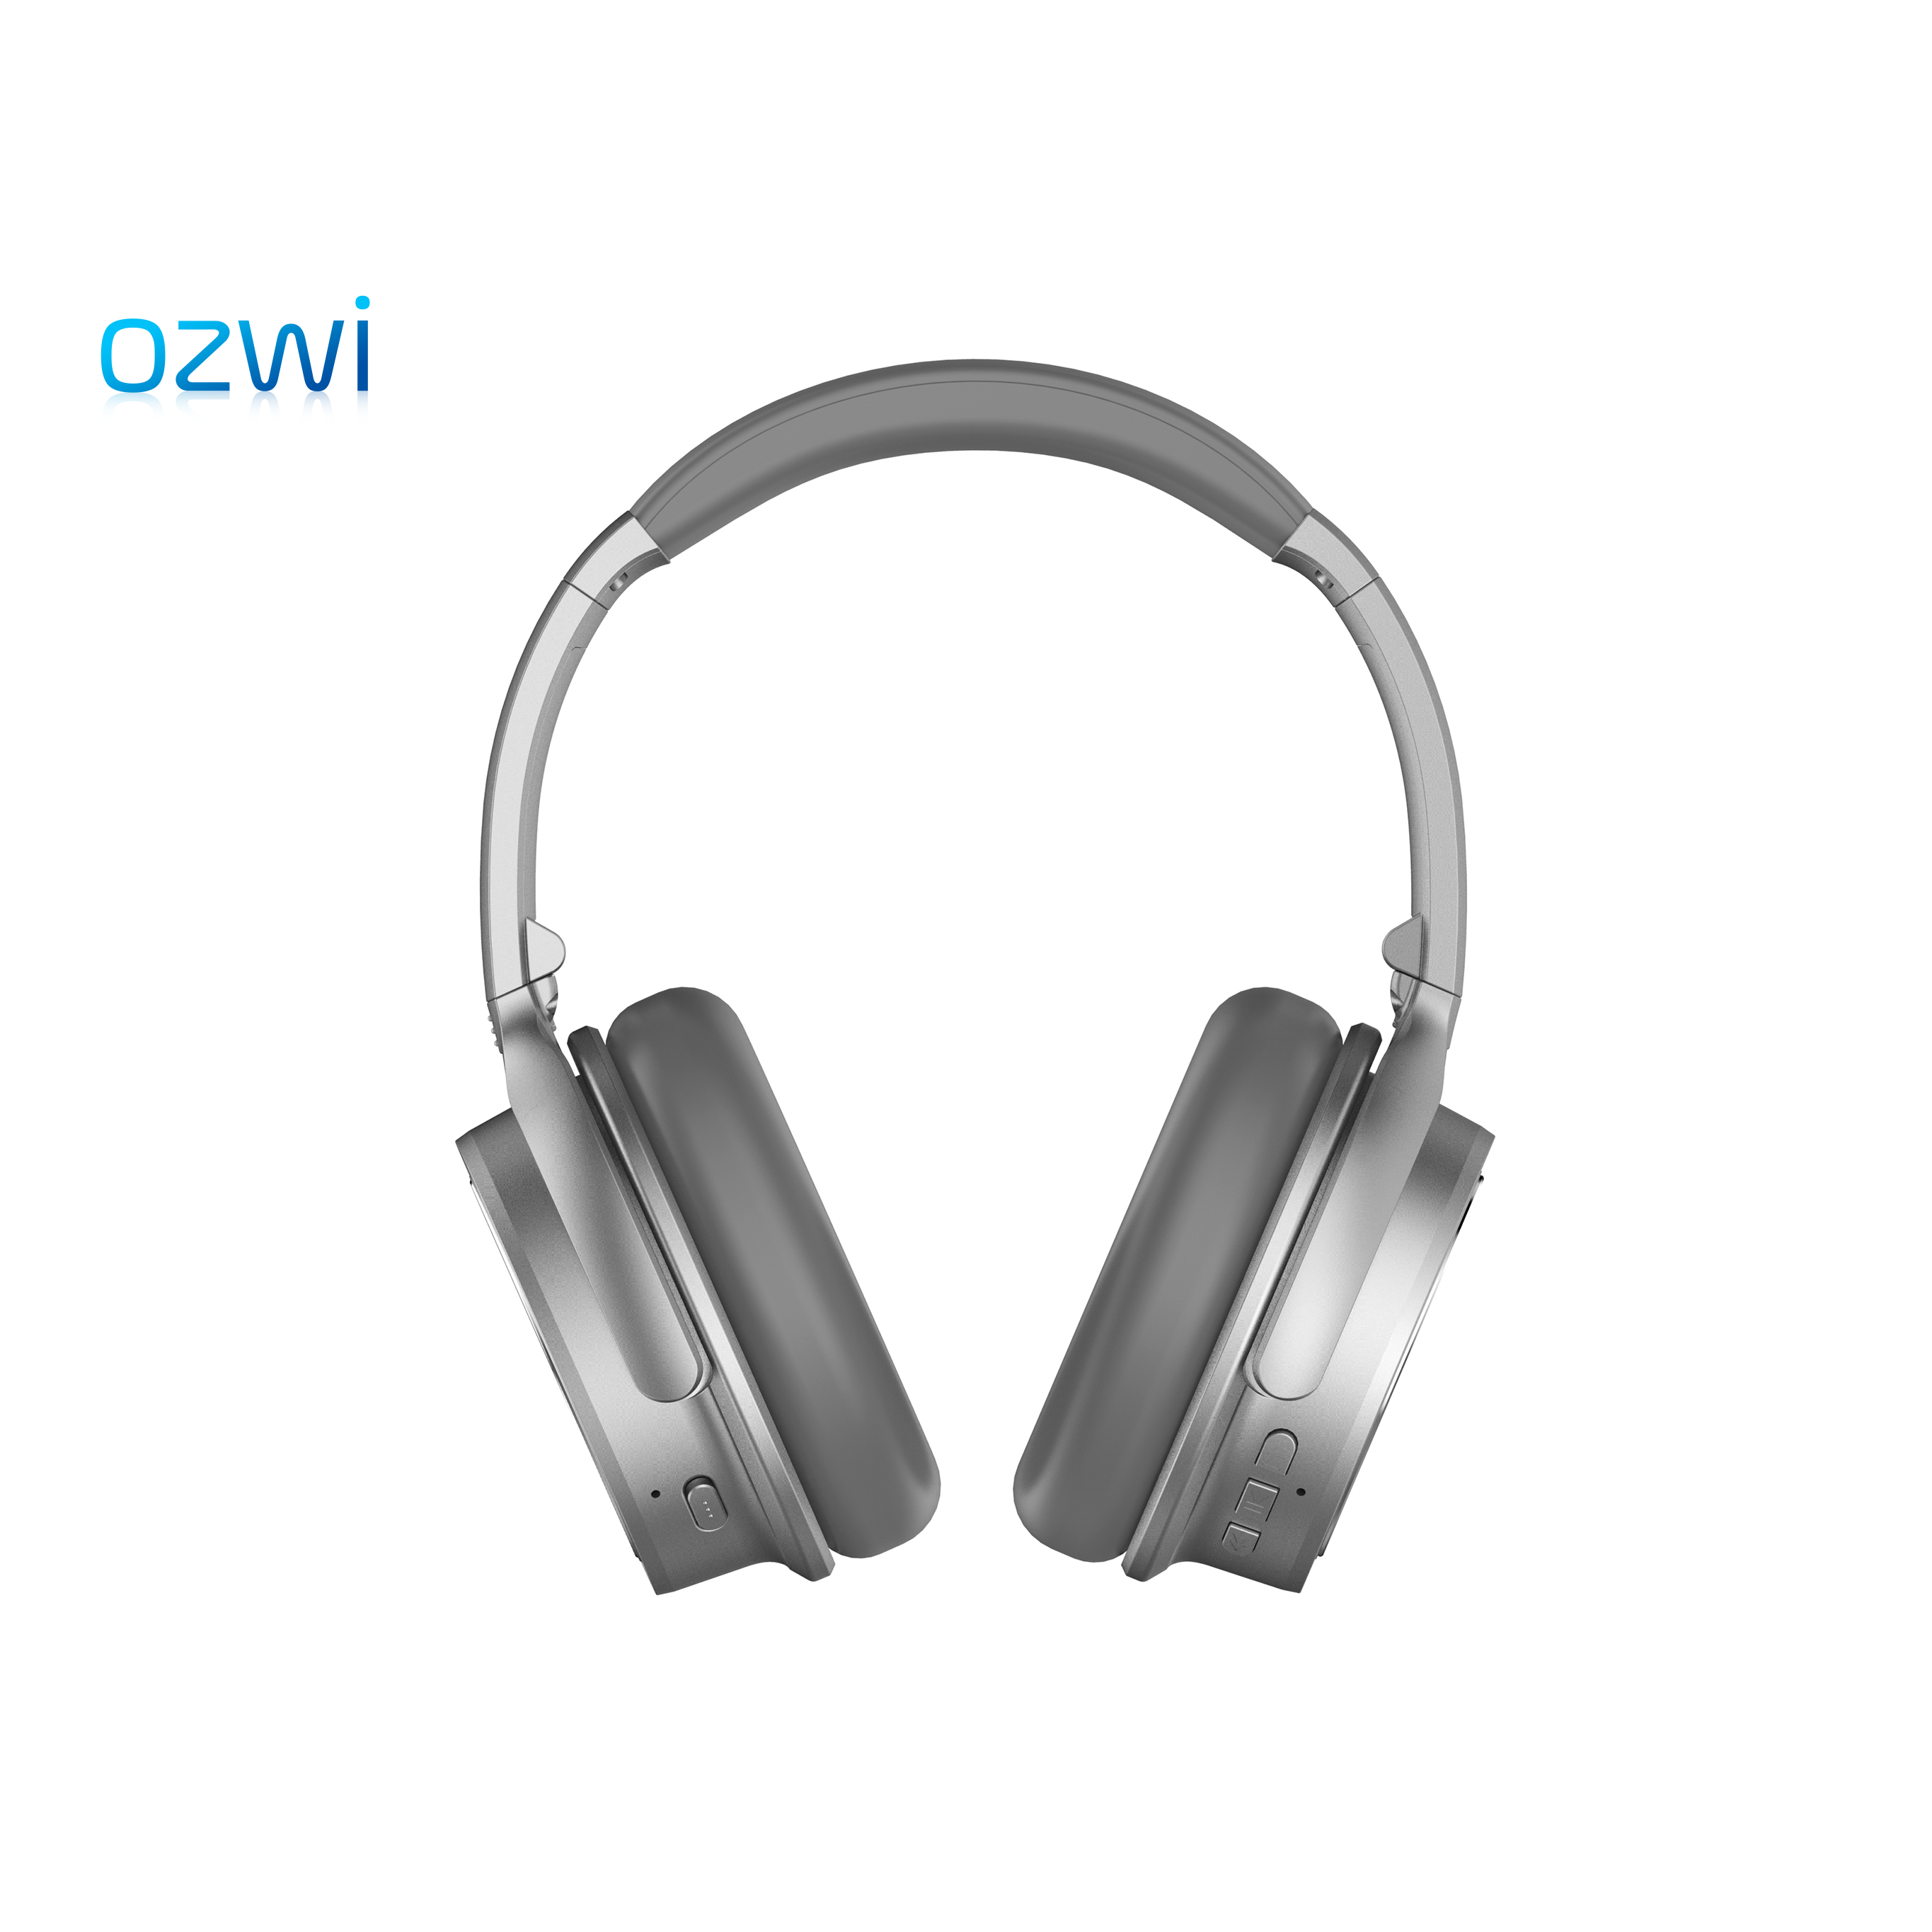 ozwi SHA700 Bluetooth noise-cancelling headphones